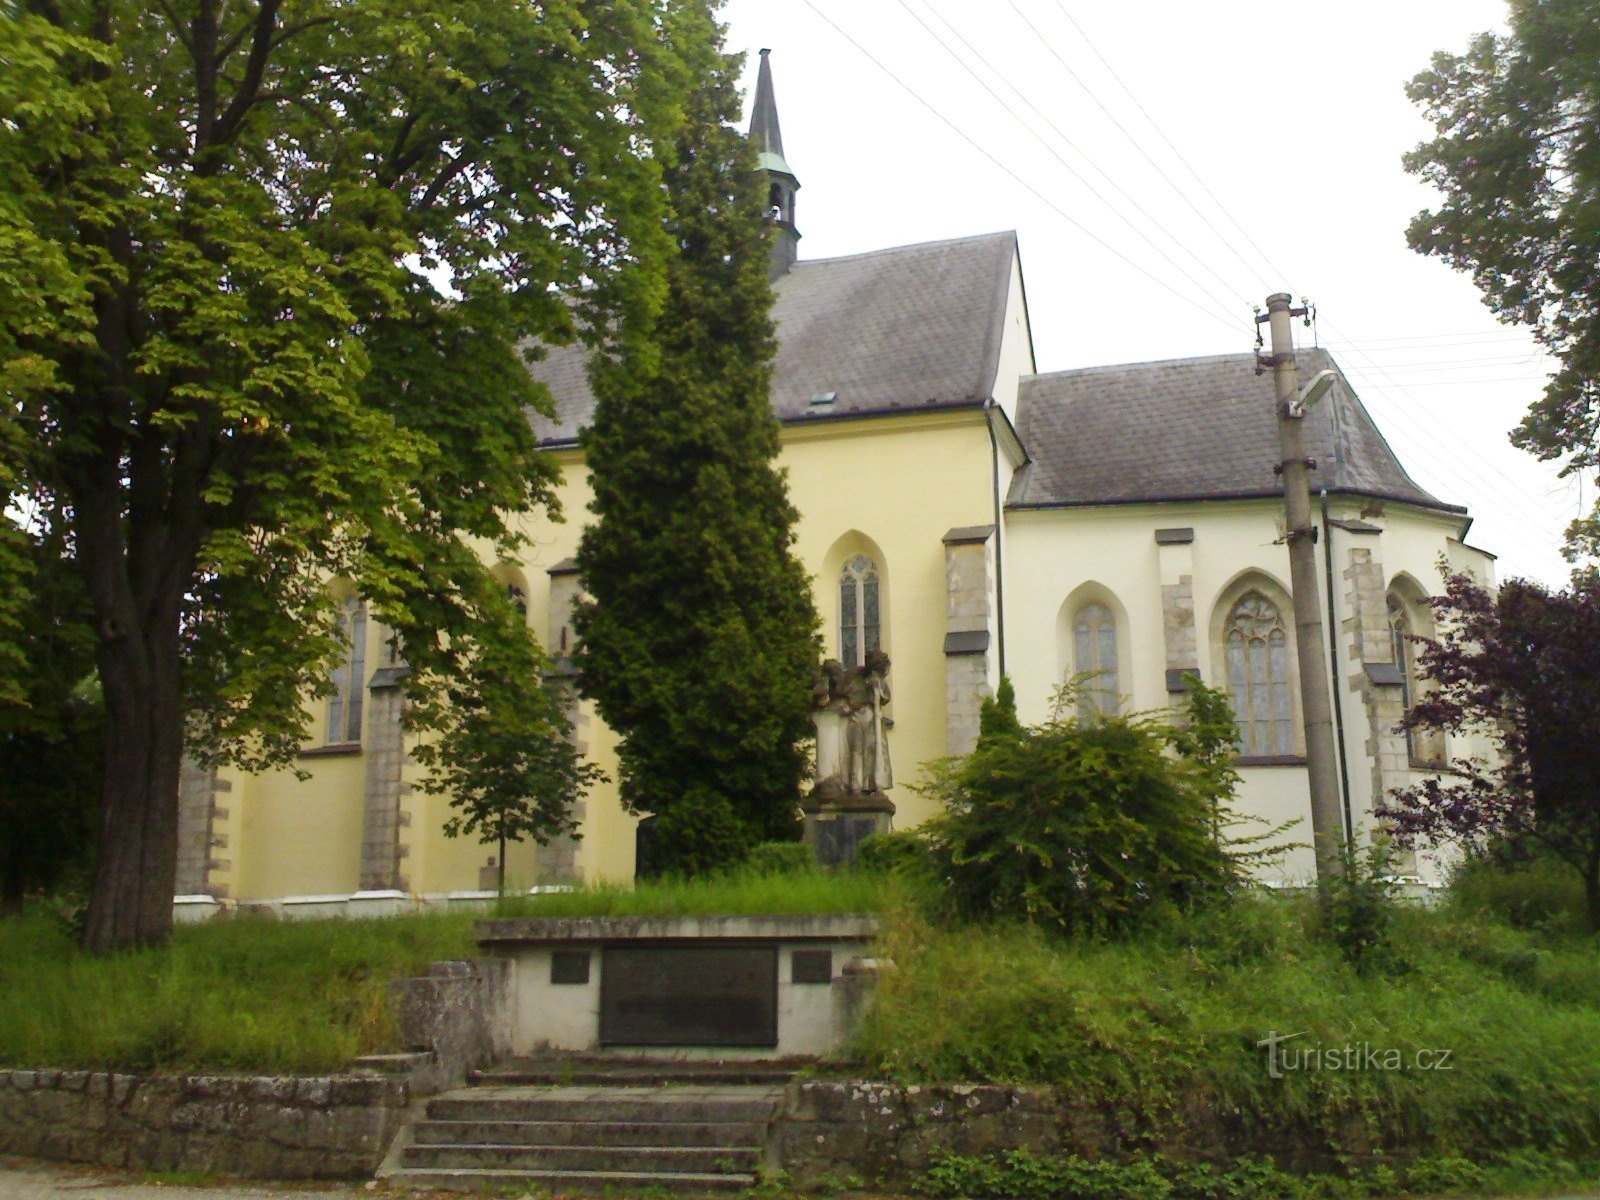 Rovensko pod Troskami - kyrkan St. Wenceslas